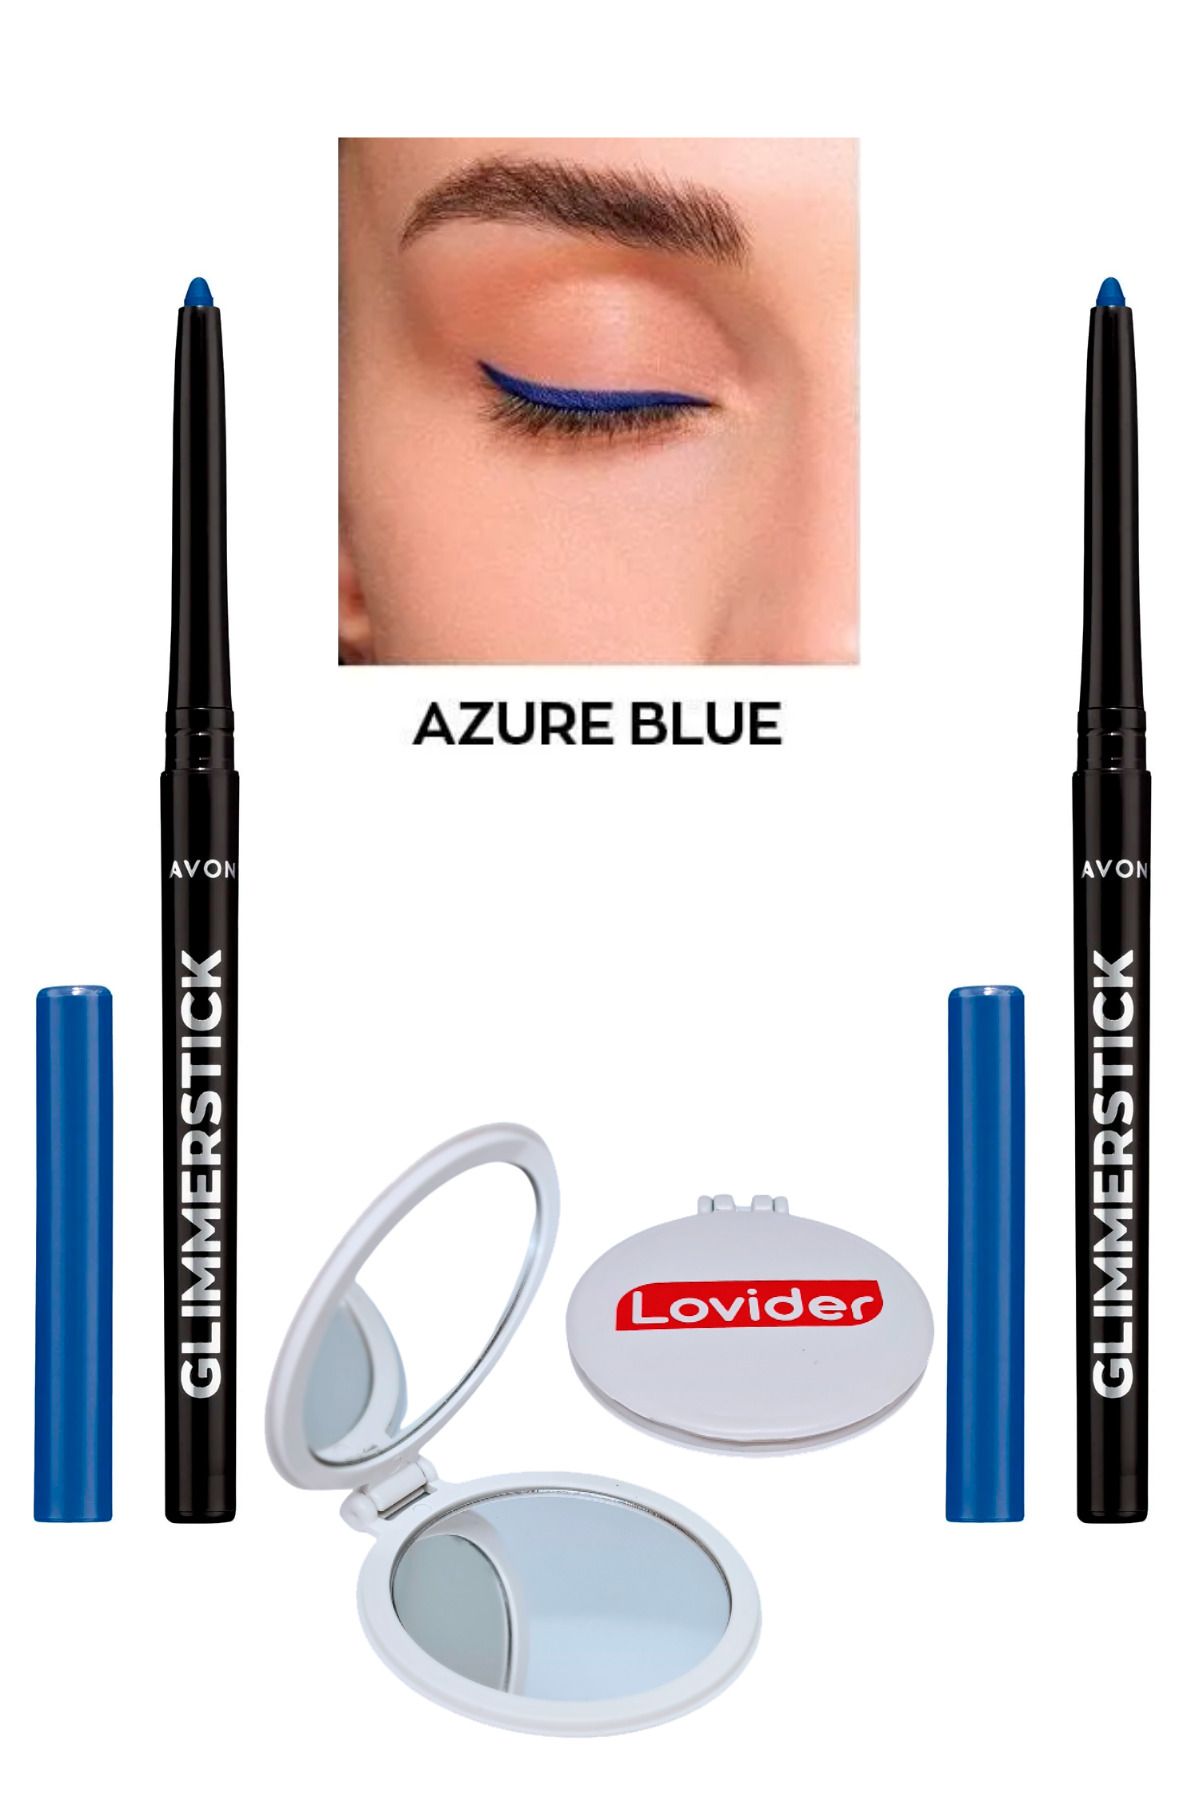 Avon Glimmersticks Asansörlü Göz Kalemi Azure Blue 2'li + Lovider Cep Aynası Hediye